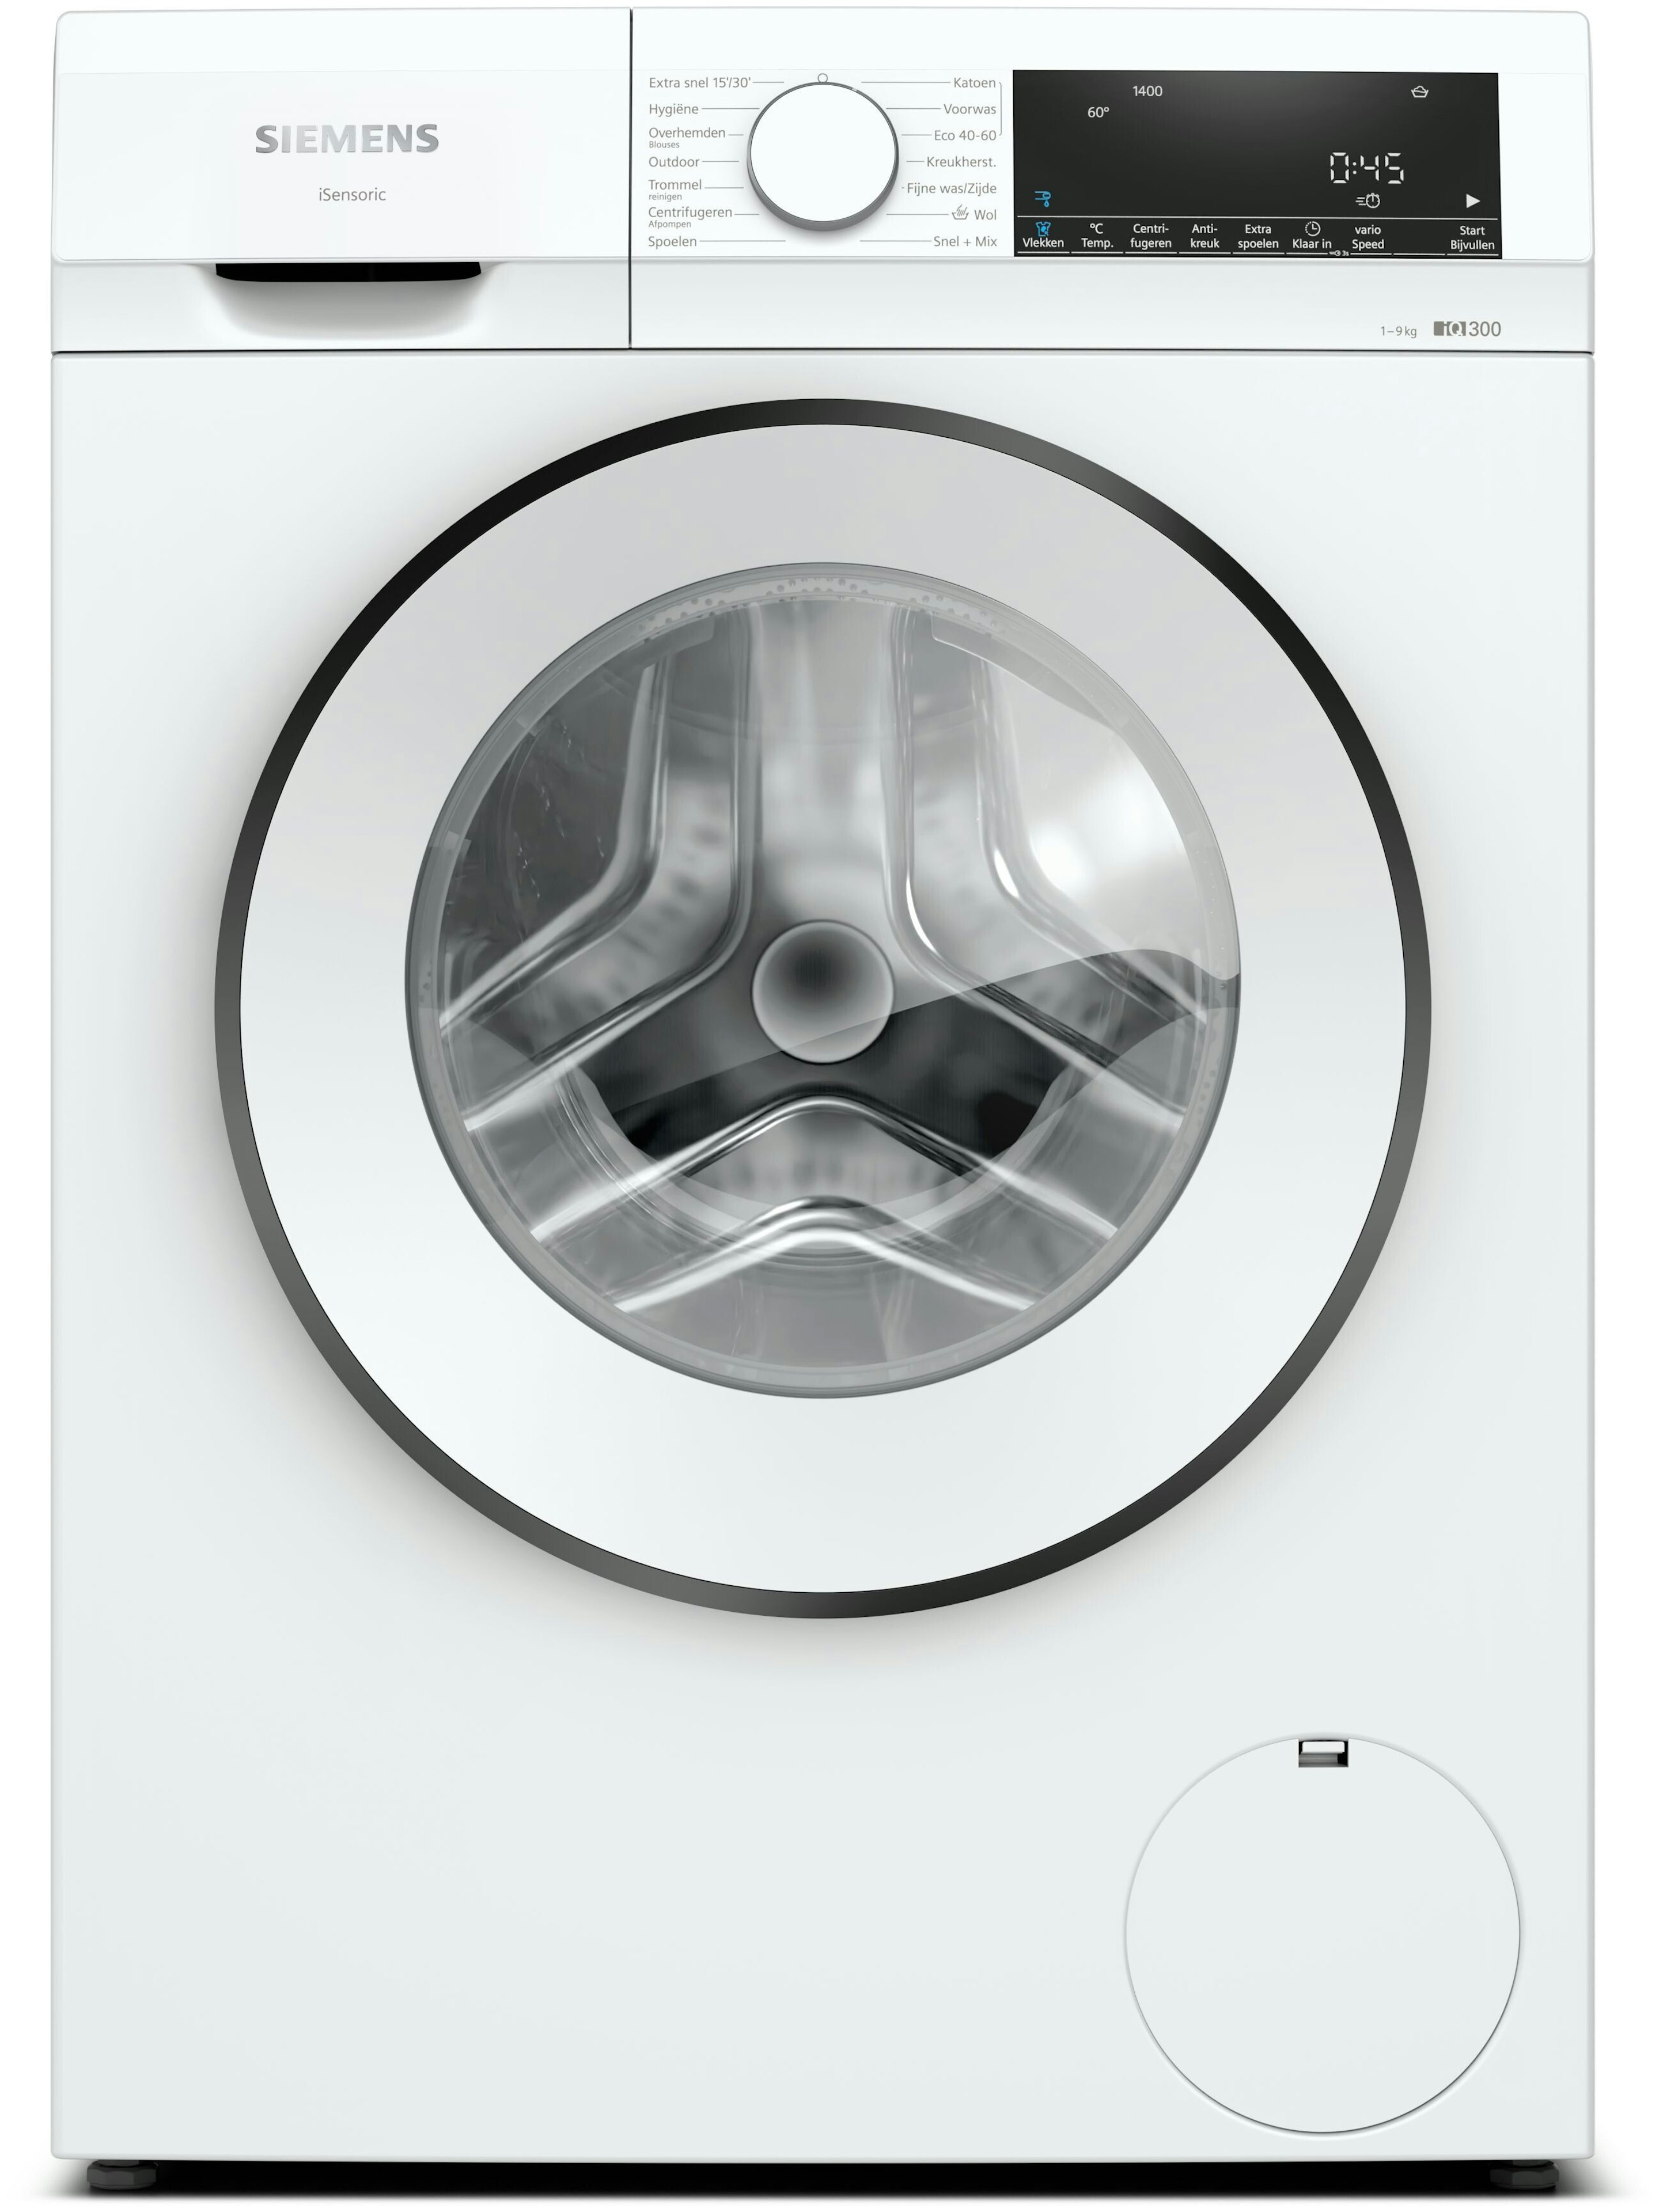 Nieuwsgierigheid Donau Vervallen Wasmachine kopen? Alle wasmachines | Bemmel & Kroon